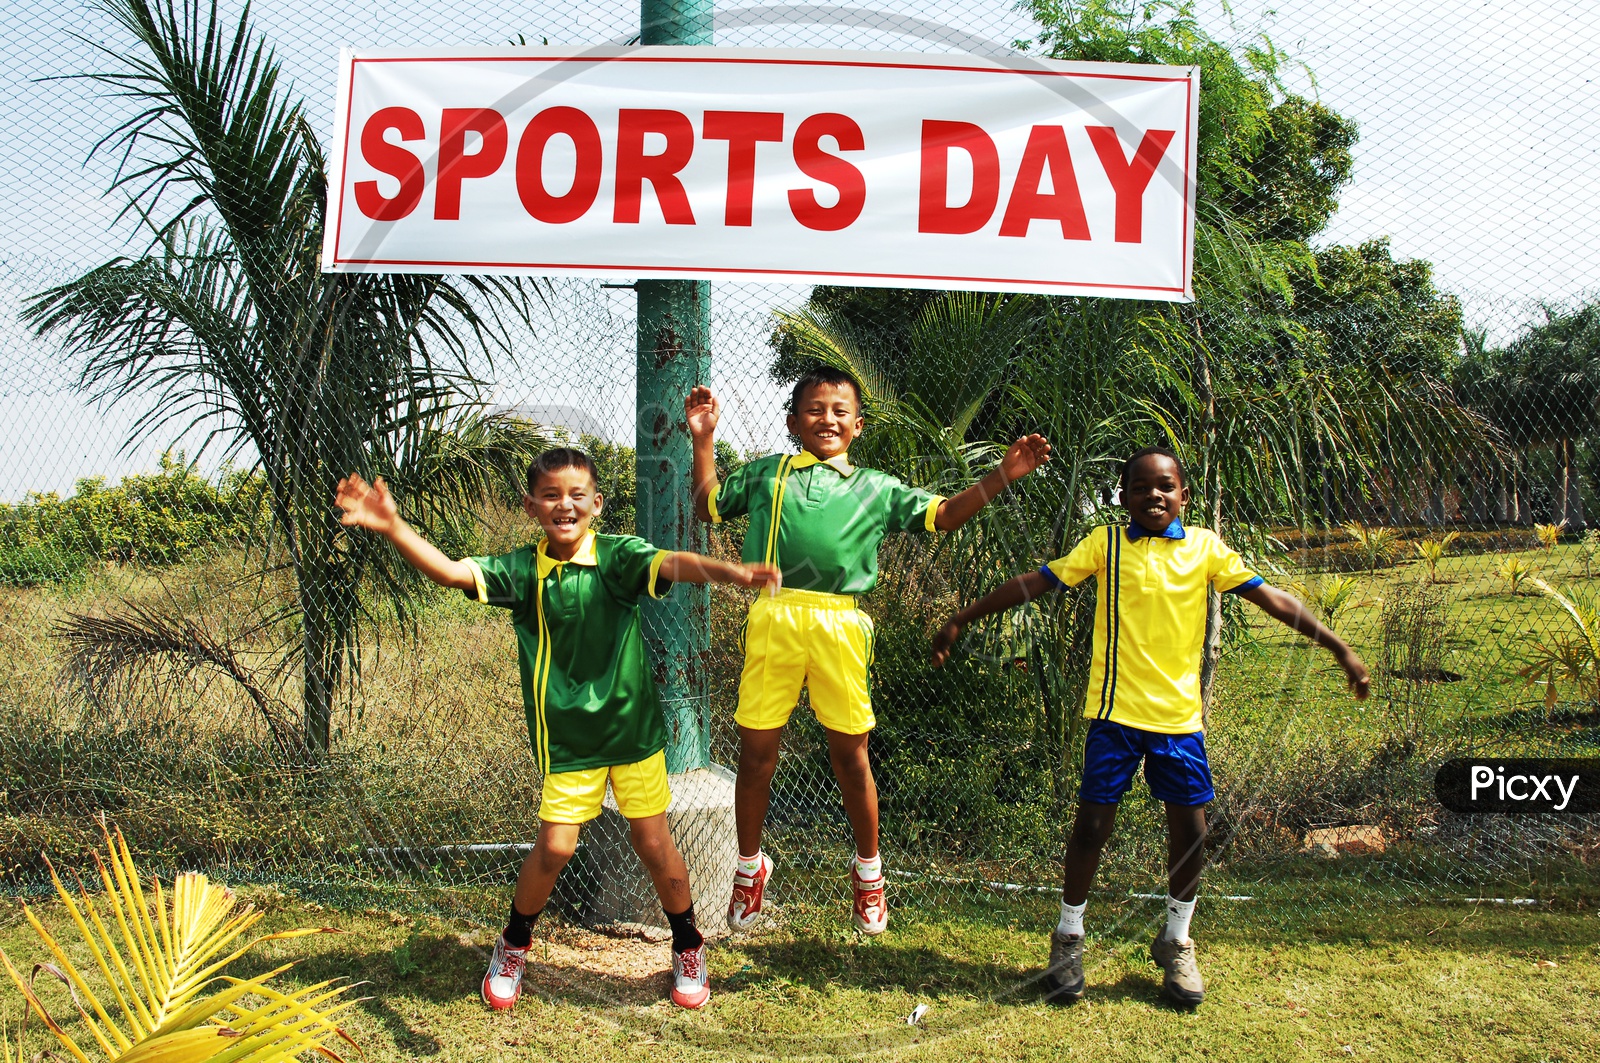 School boys jumping wearing sportswear